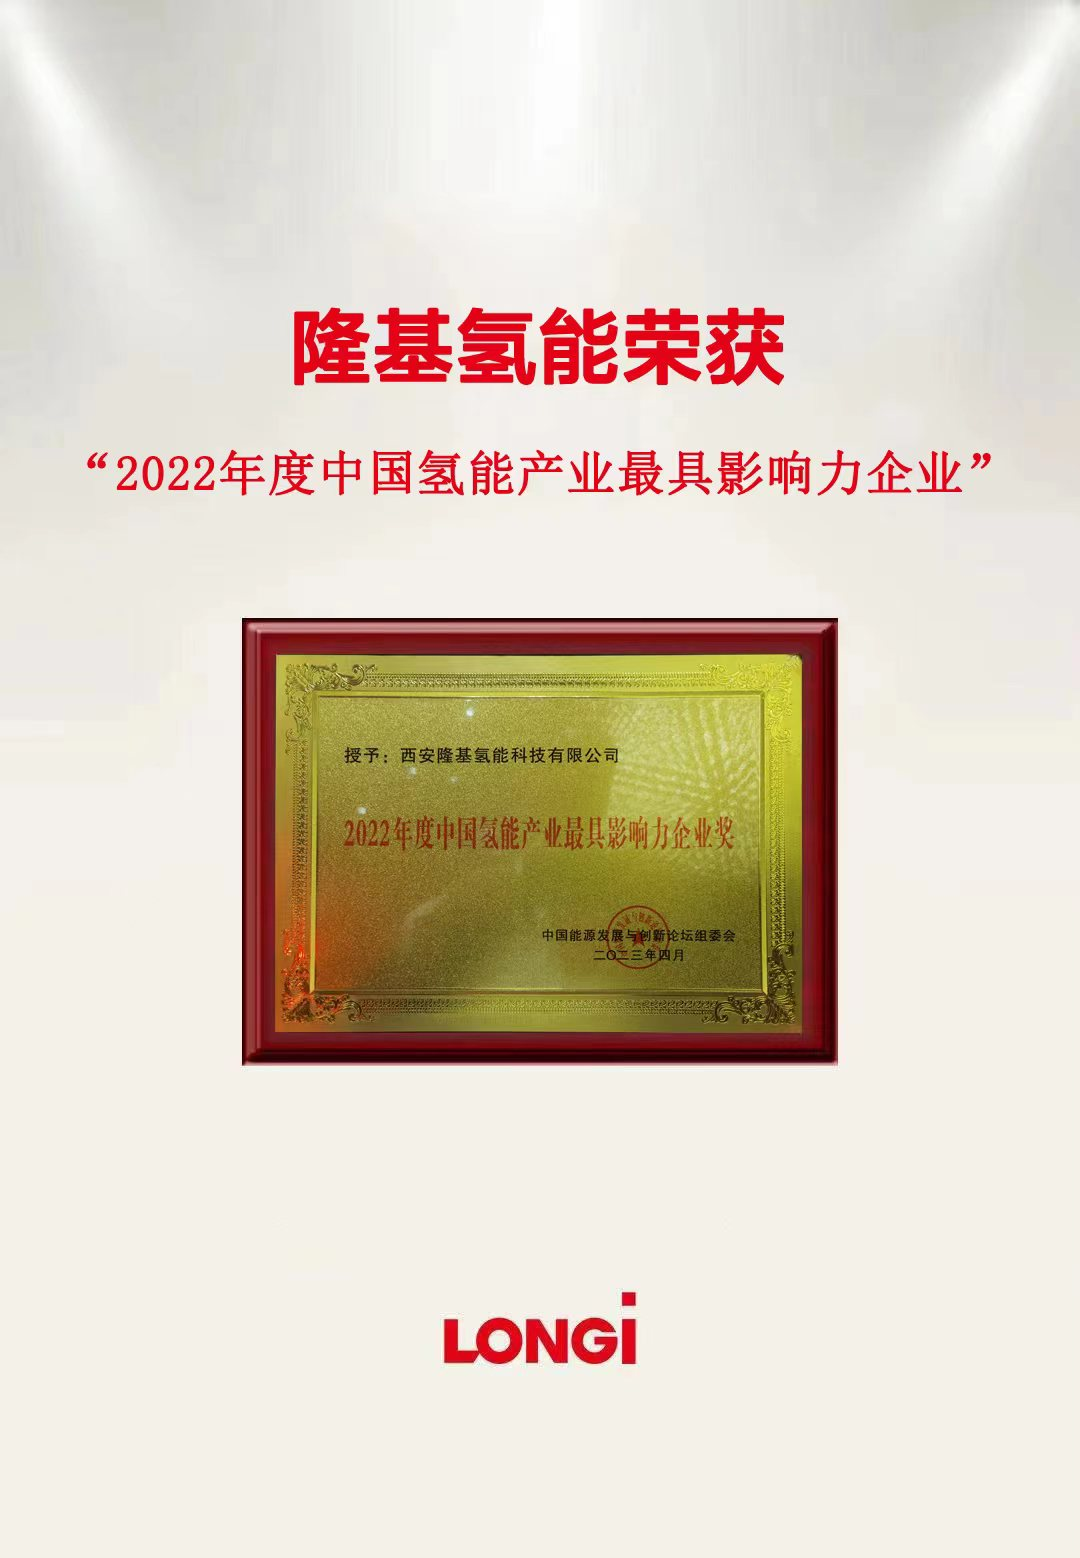 隆基氢能荣获“2022年度中国氢能产业最具影响力企业奖”